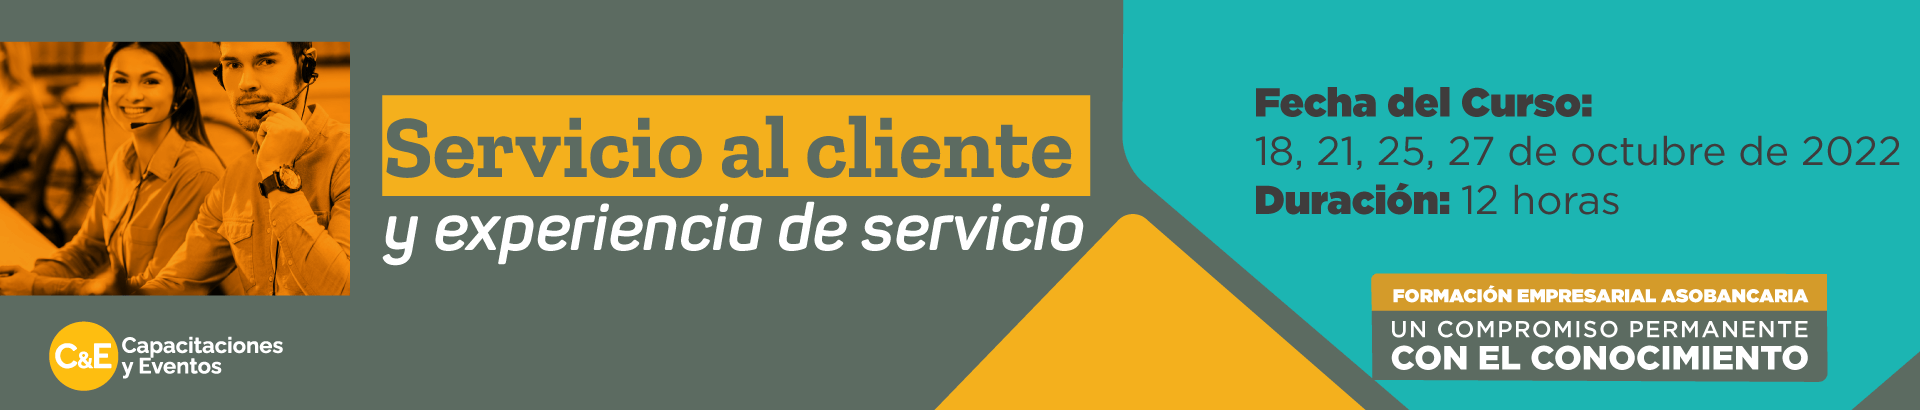 Servicio al cliente y experiencia de servicio